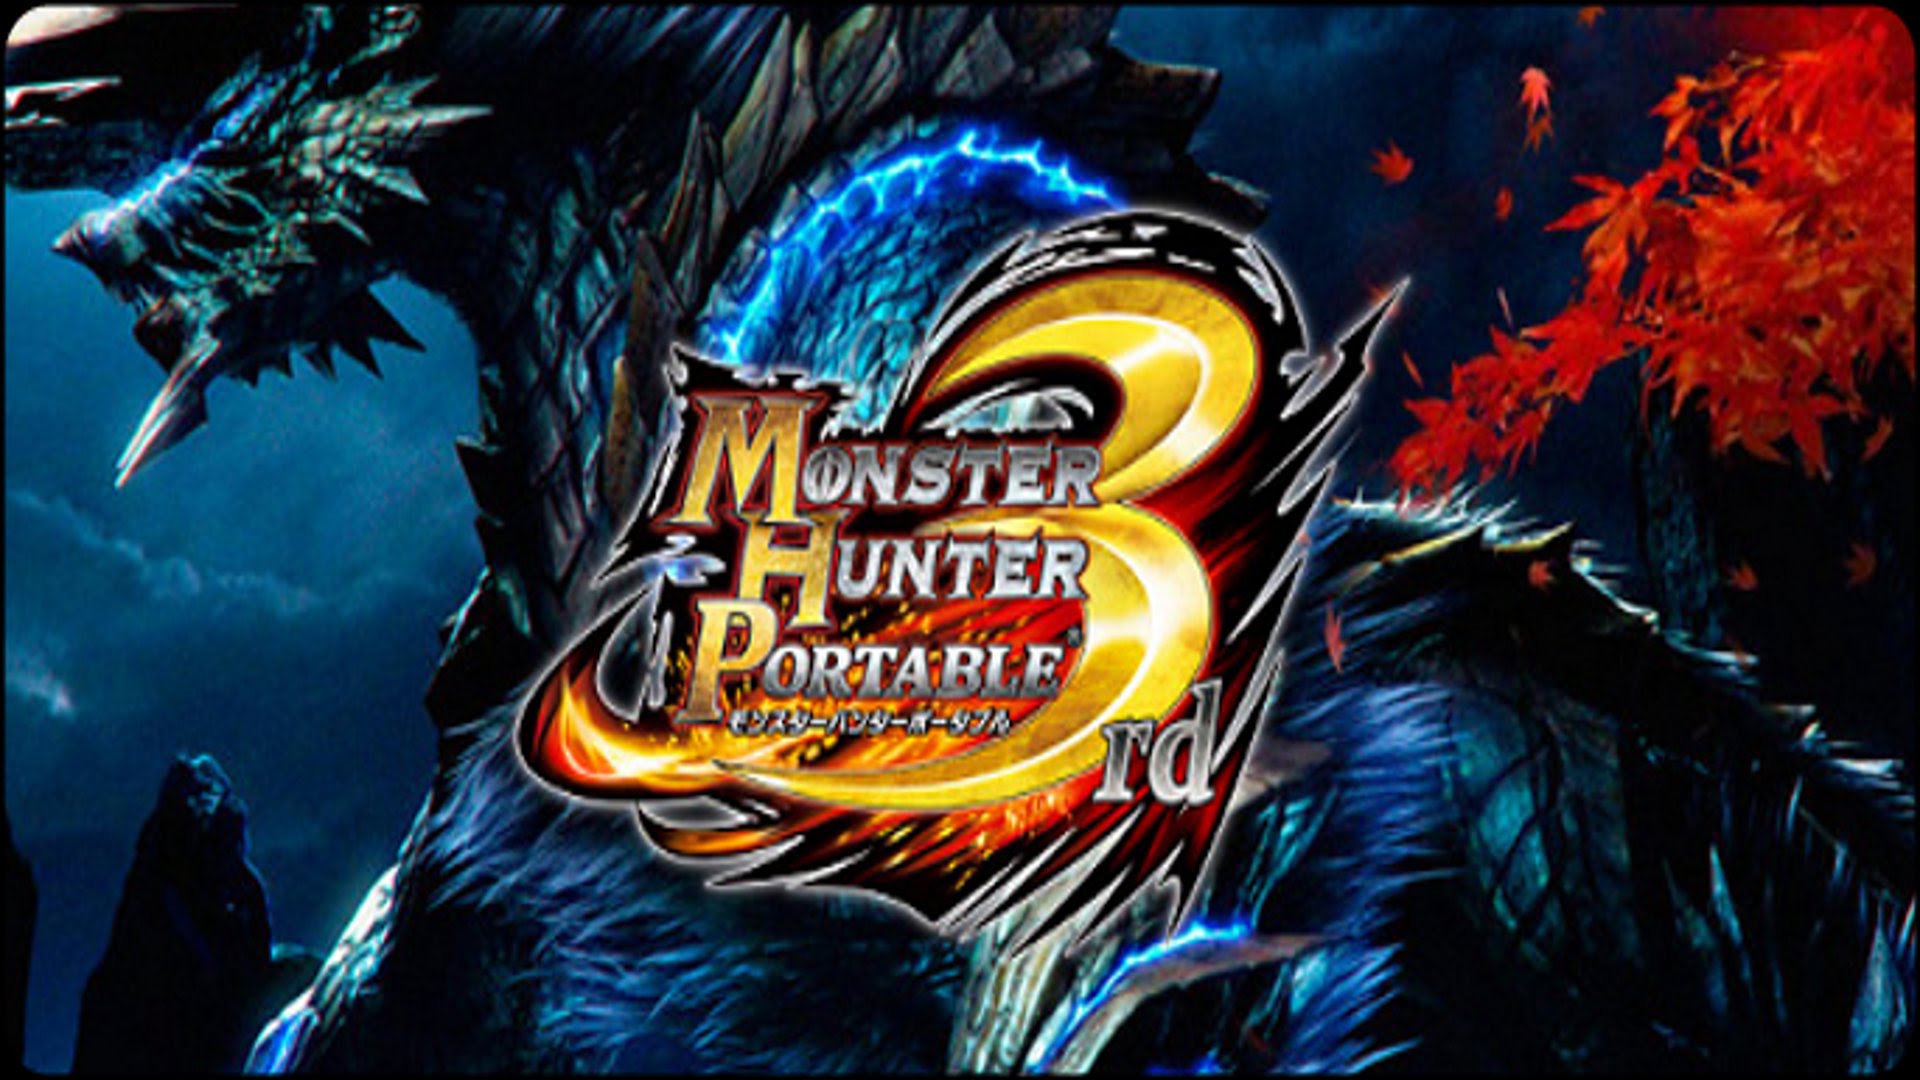 Monster Hunter Portable 3rd Wallpaper Video Game Hq